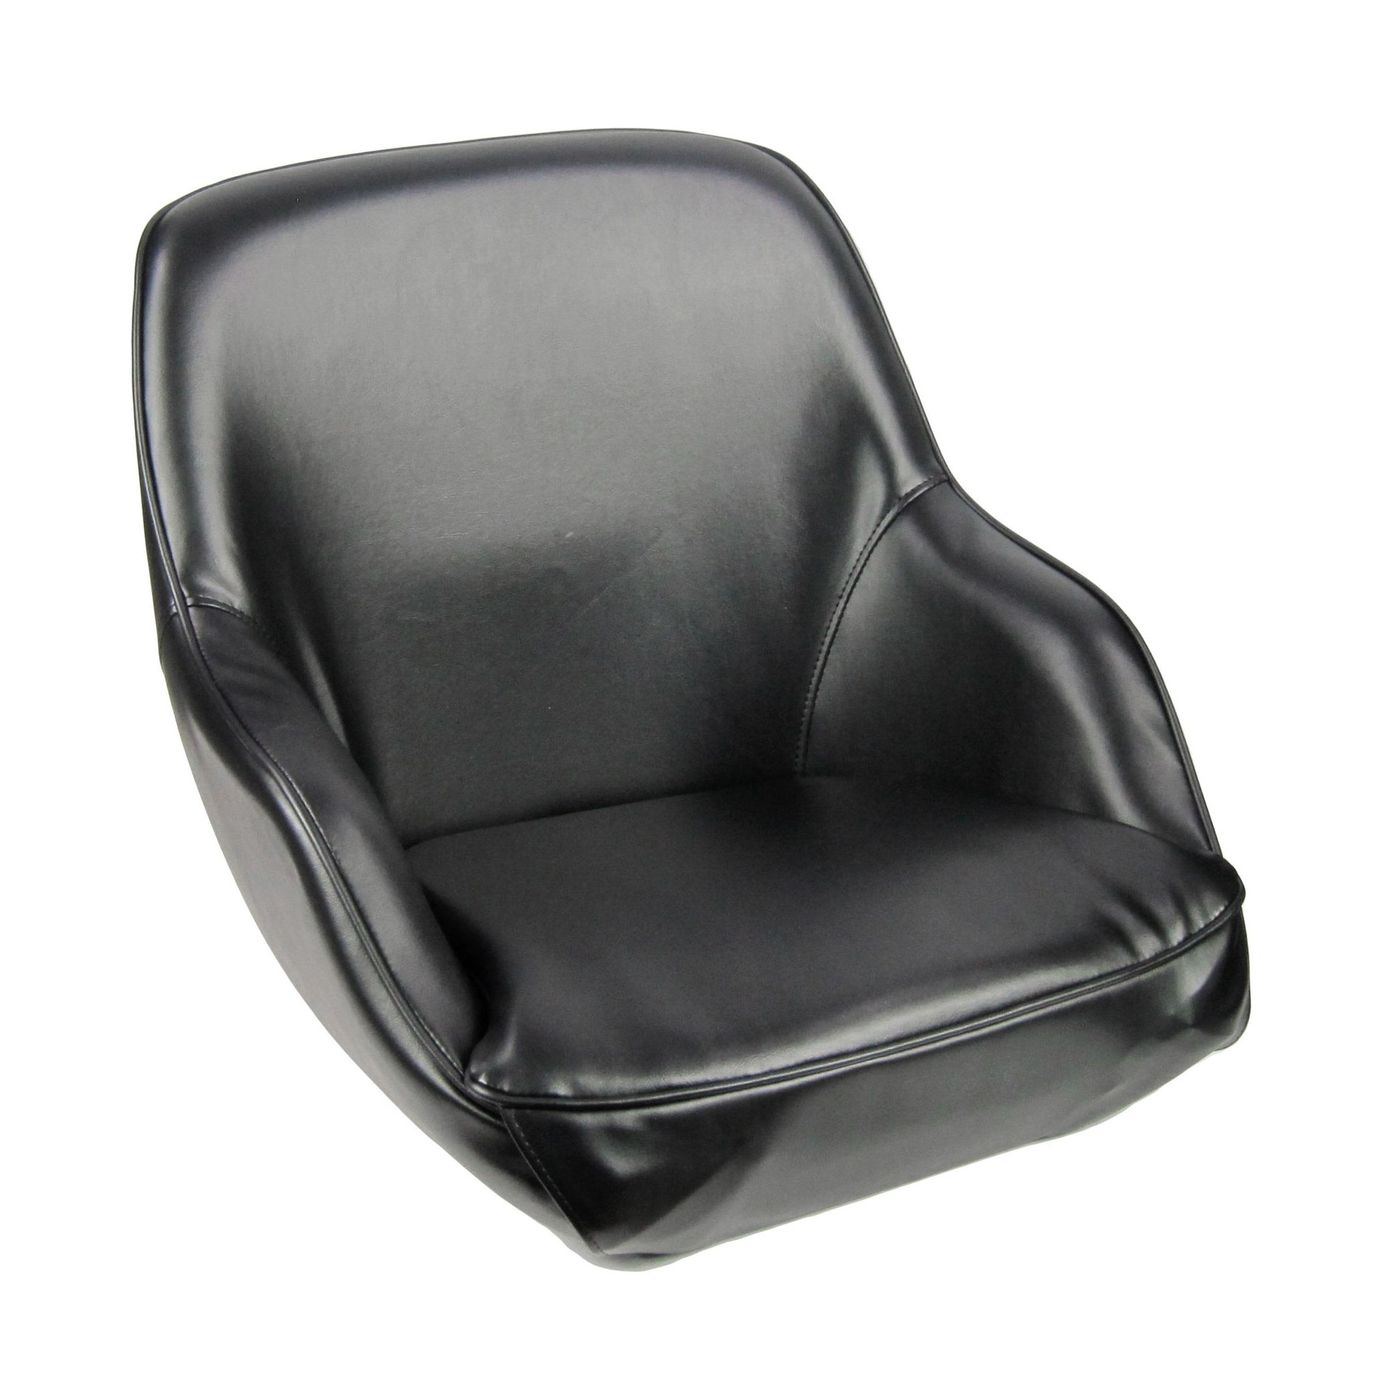 Кресло ADMIRAL мягкое, материал черный винил 1061420990 роскошный автомобиль кожаная крышка сиденья черный автомобильный чехол подушки универсальные автомобильные подушки автозапчасти